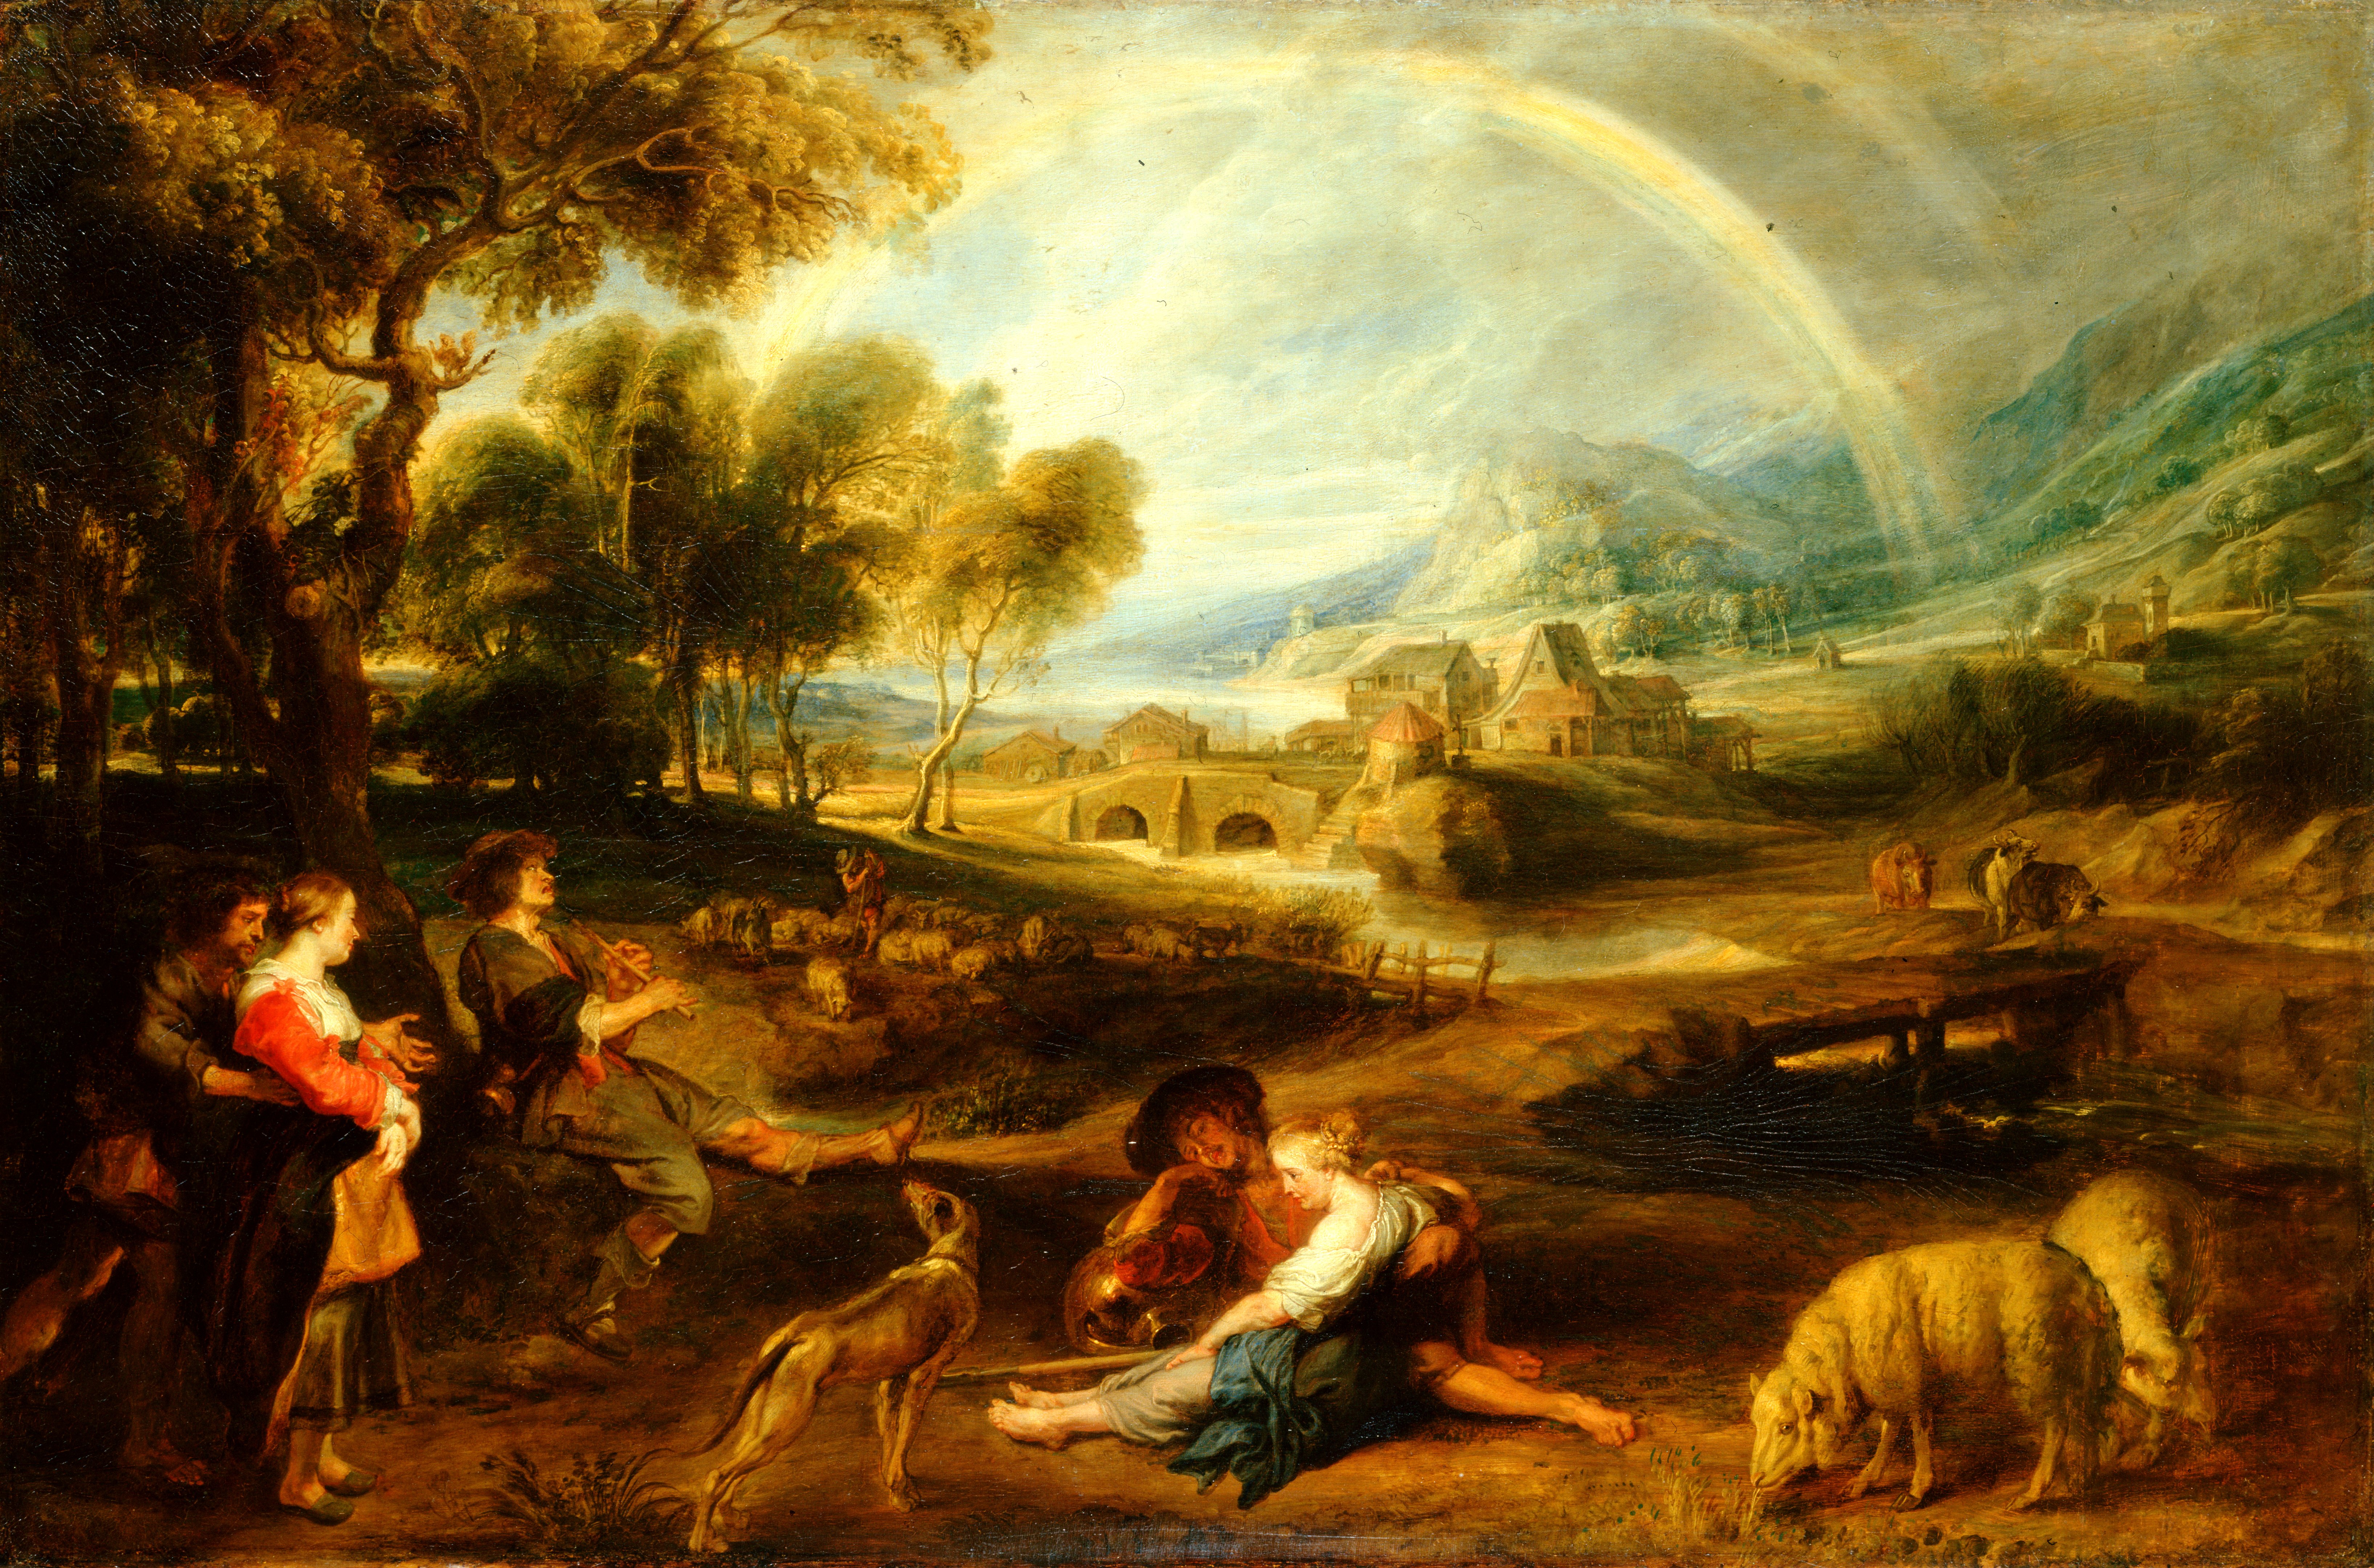 Следующая картина. Питер Пауль Ру́бенс. «Пейзаж с радугой». 1630—1635. Питер Пауль Рубенс пейзаж с радугой 1630. Питер Пауль Рубенс пейзажи. Питер Рубенс пейзаж с радугой.